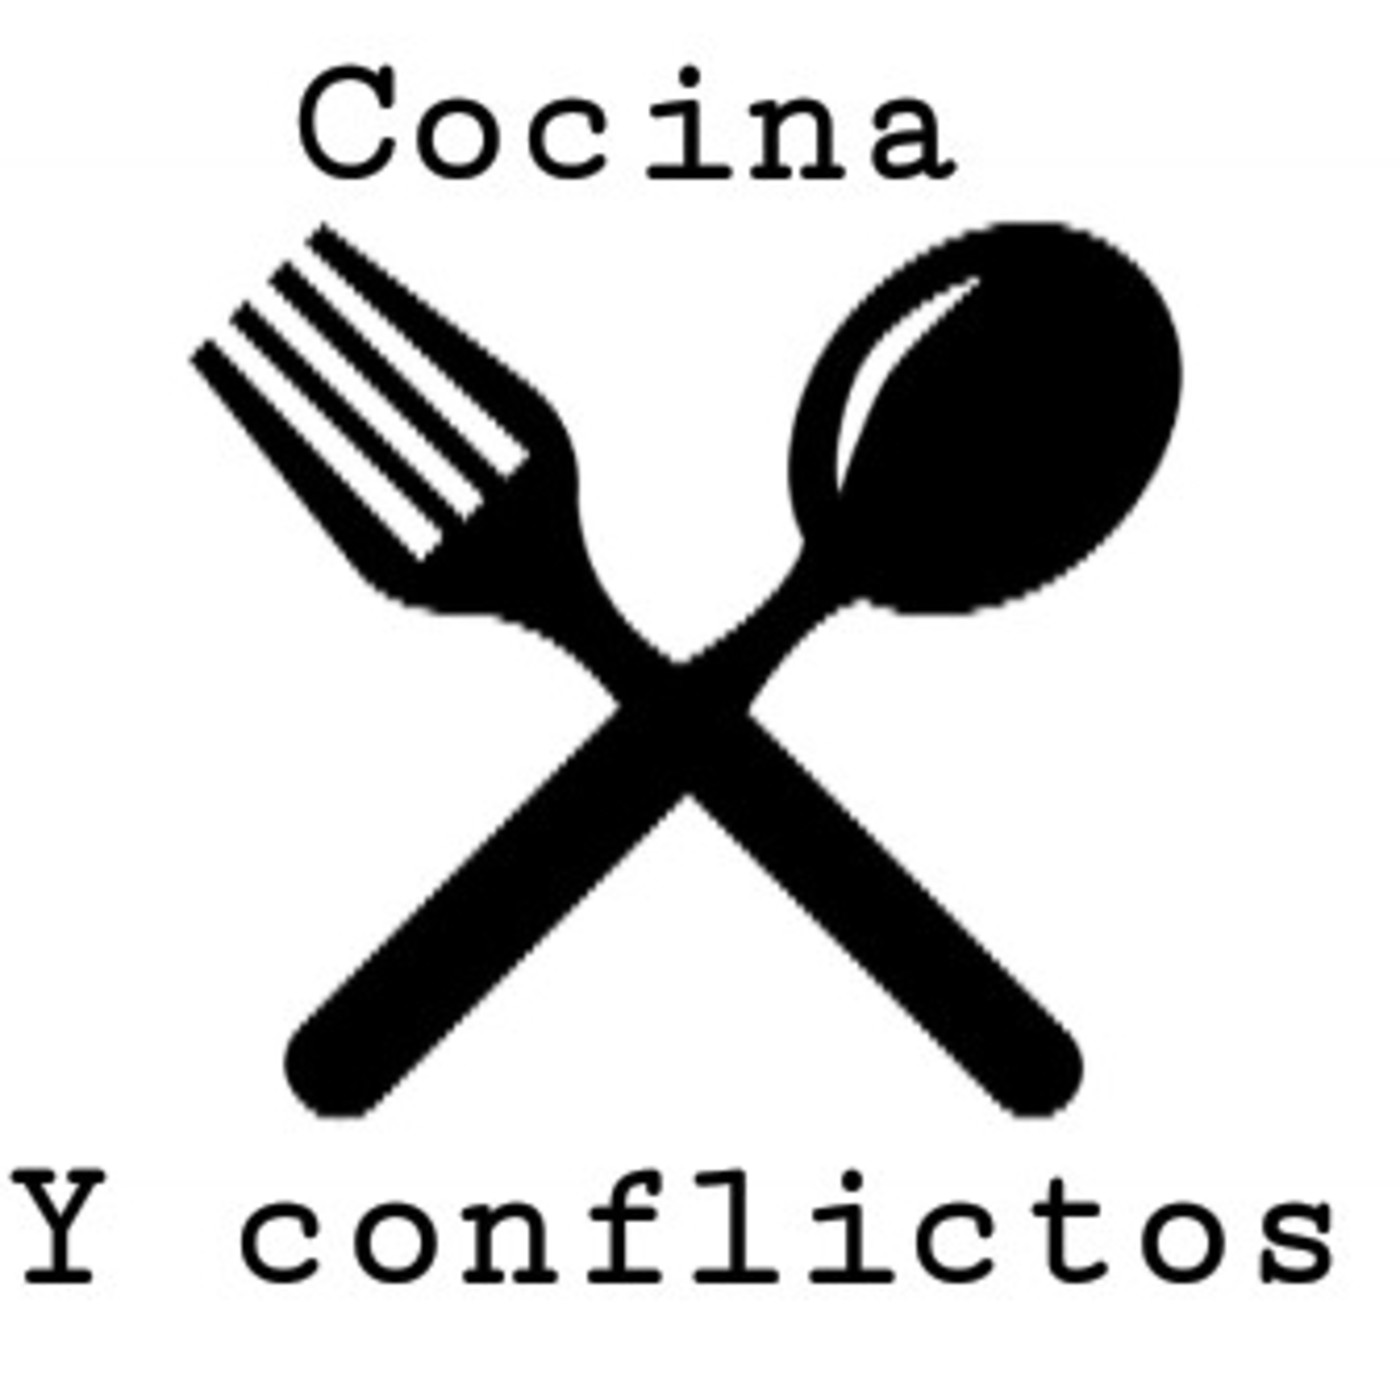 Cocina y conflictos